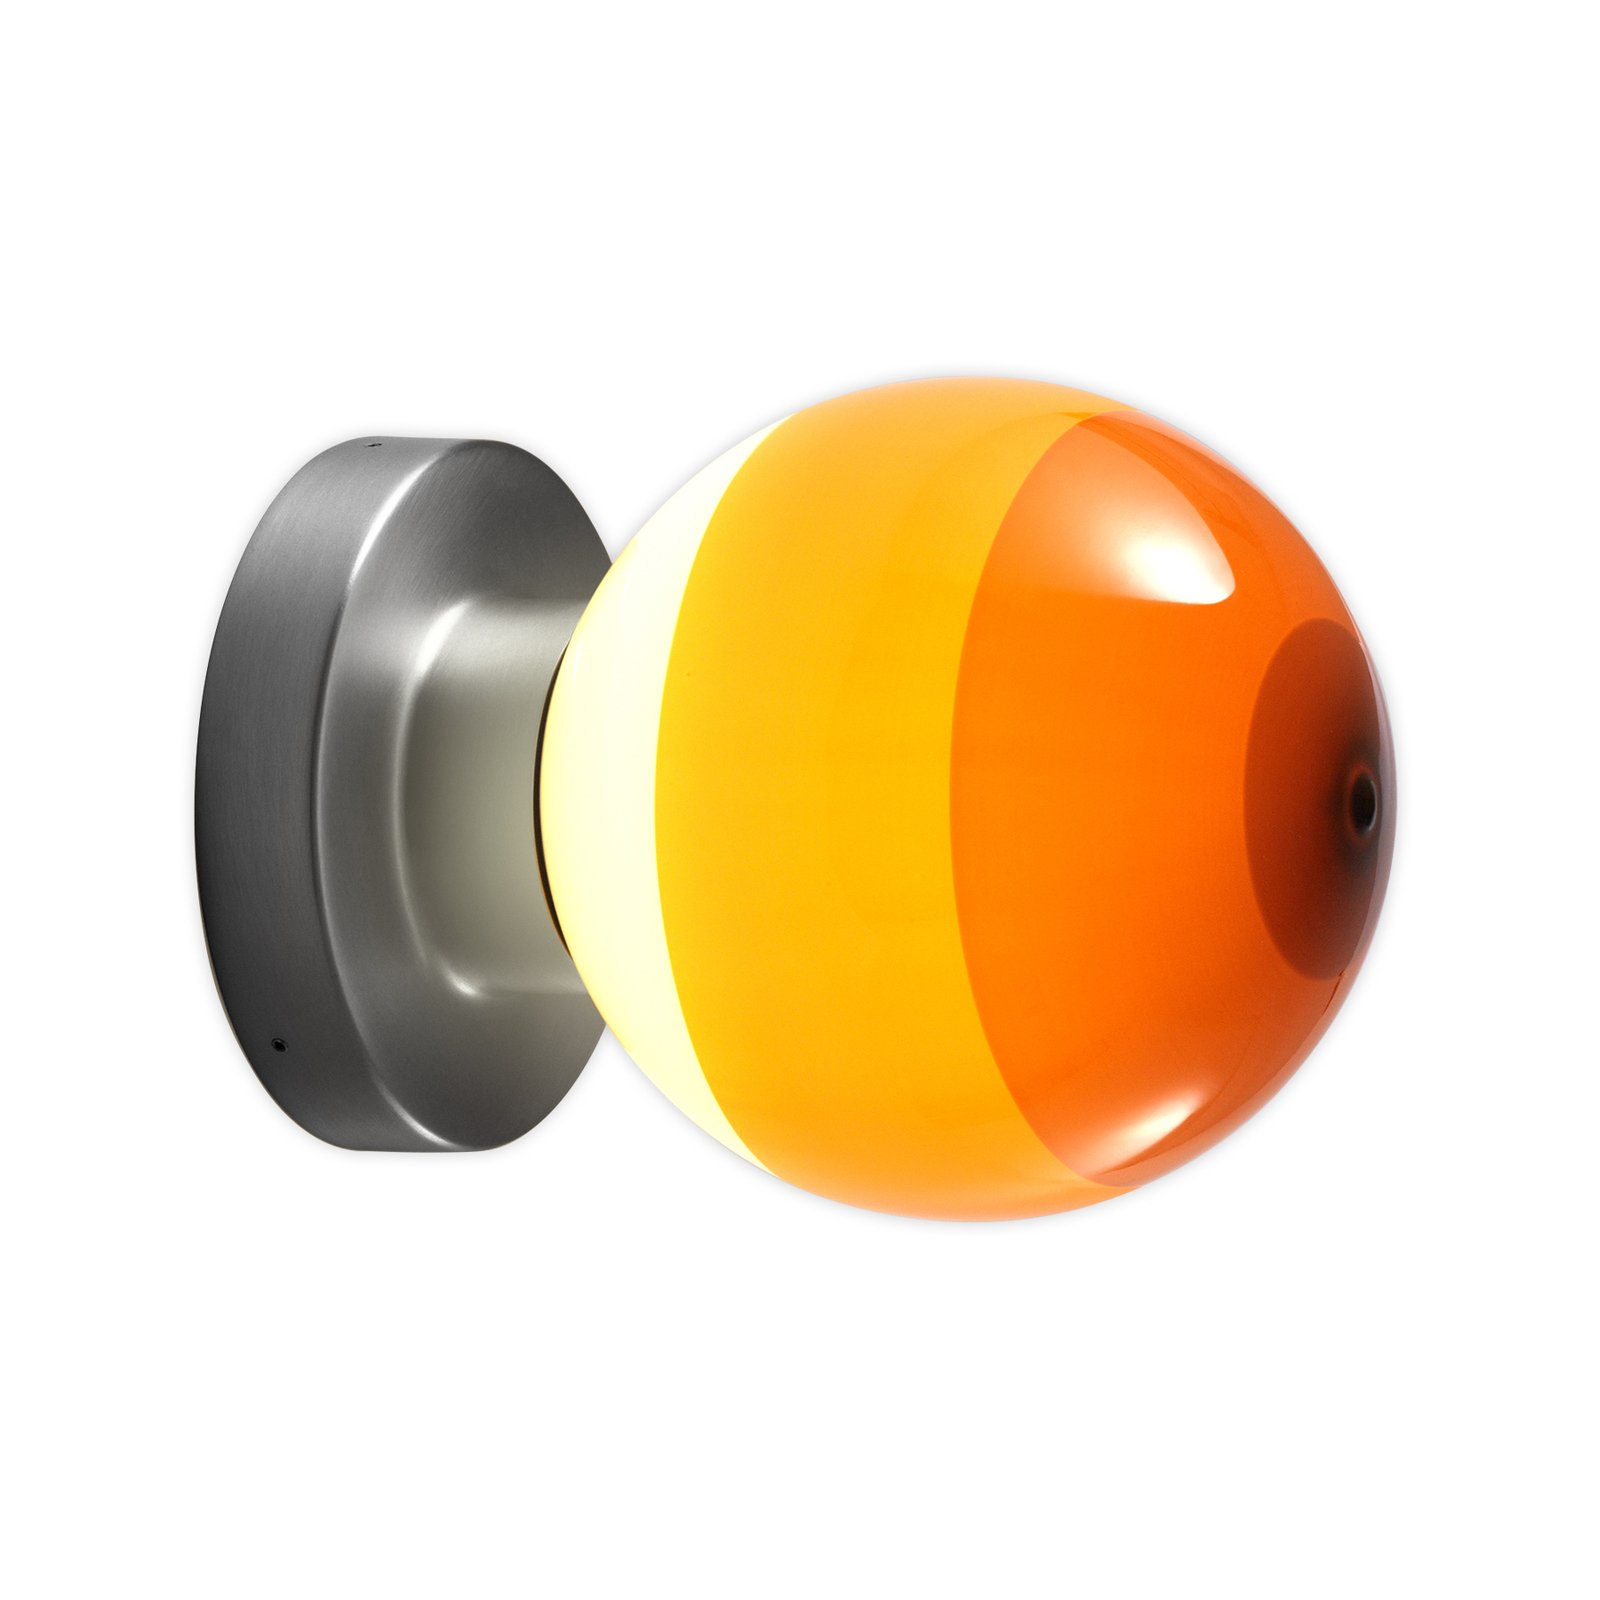 MARSET Dipping Light A2 LED-Wandlampe, orange/grau